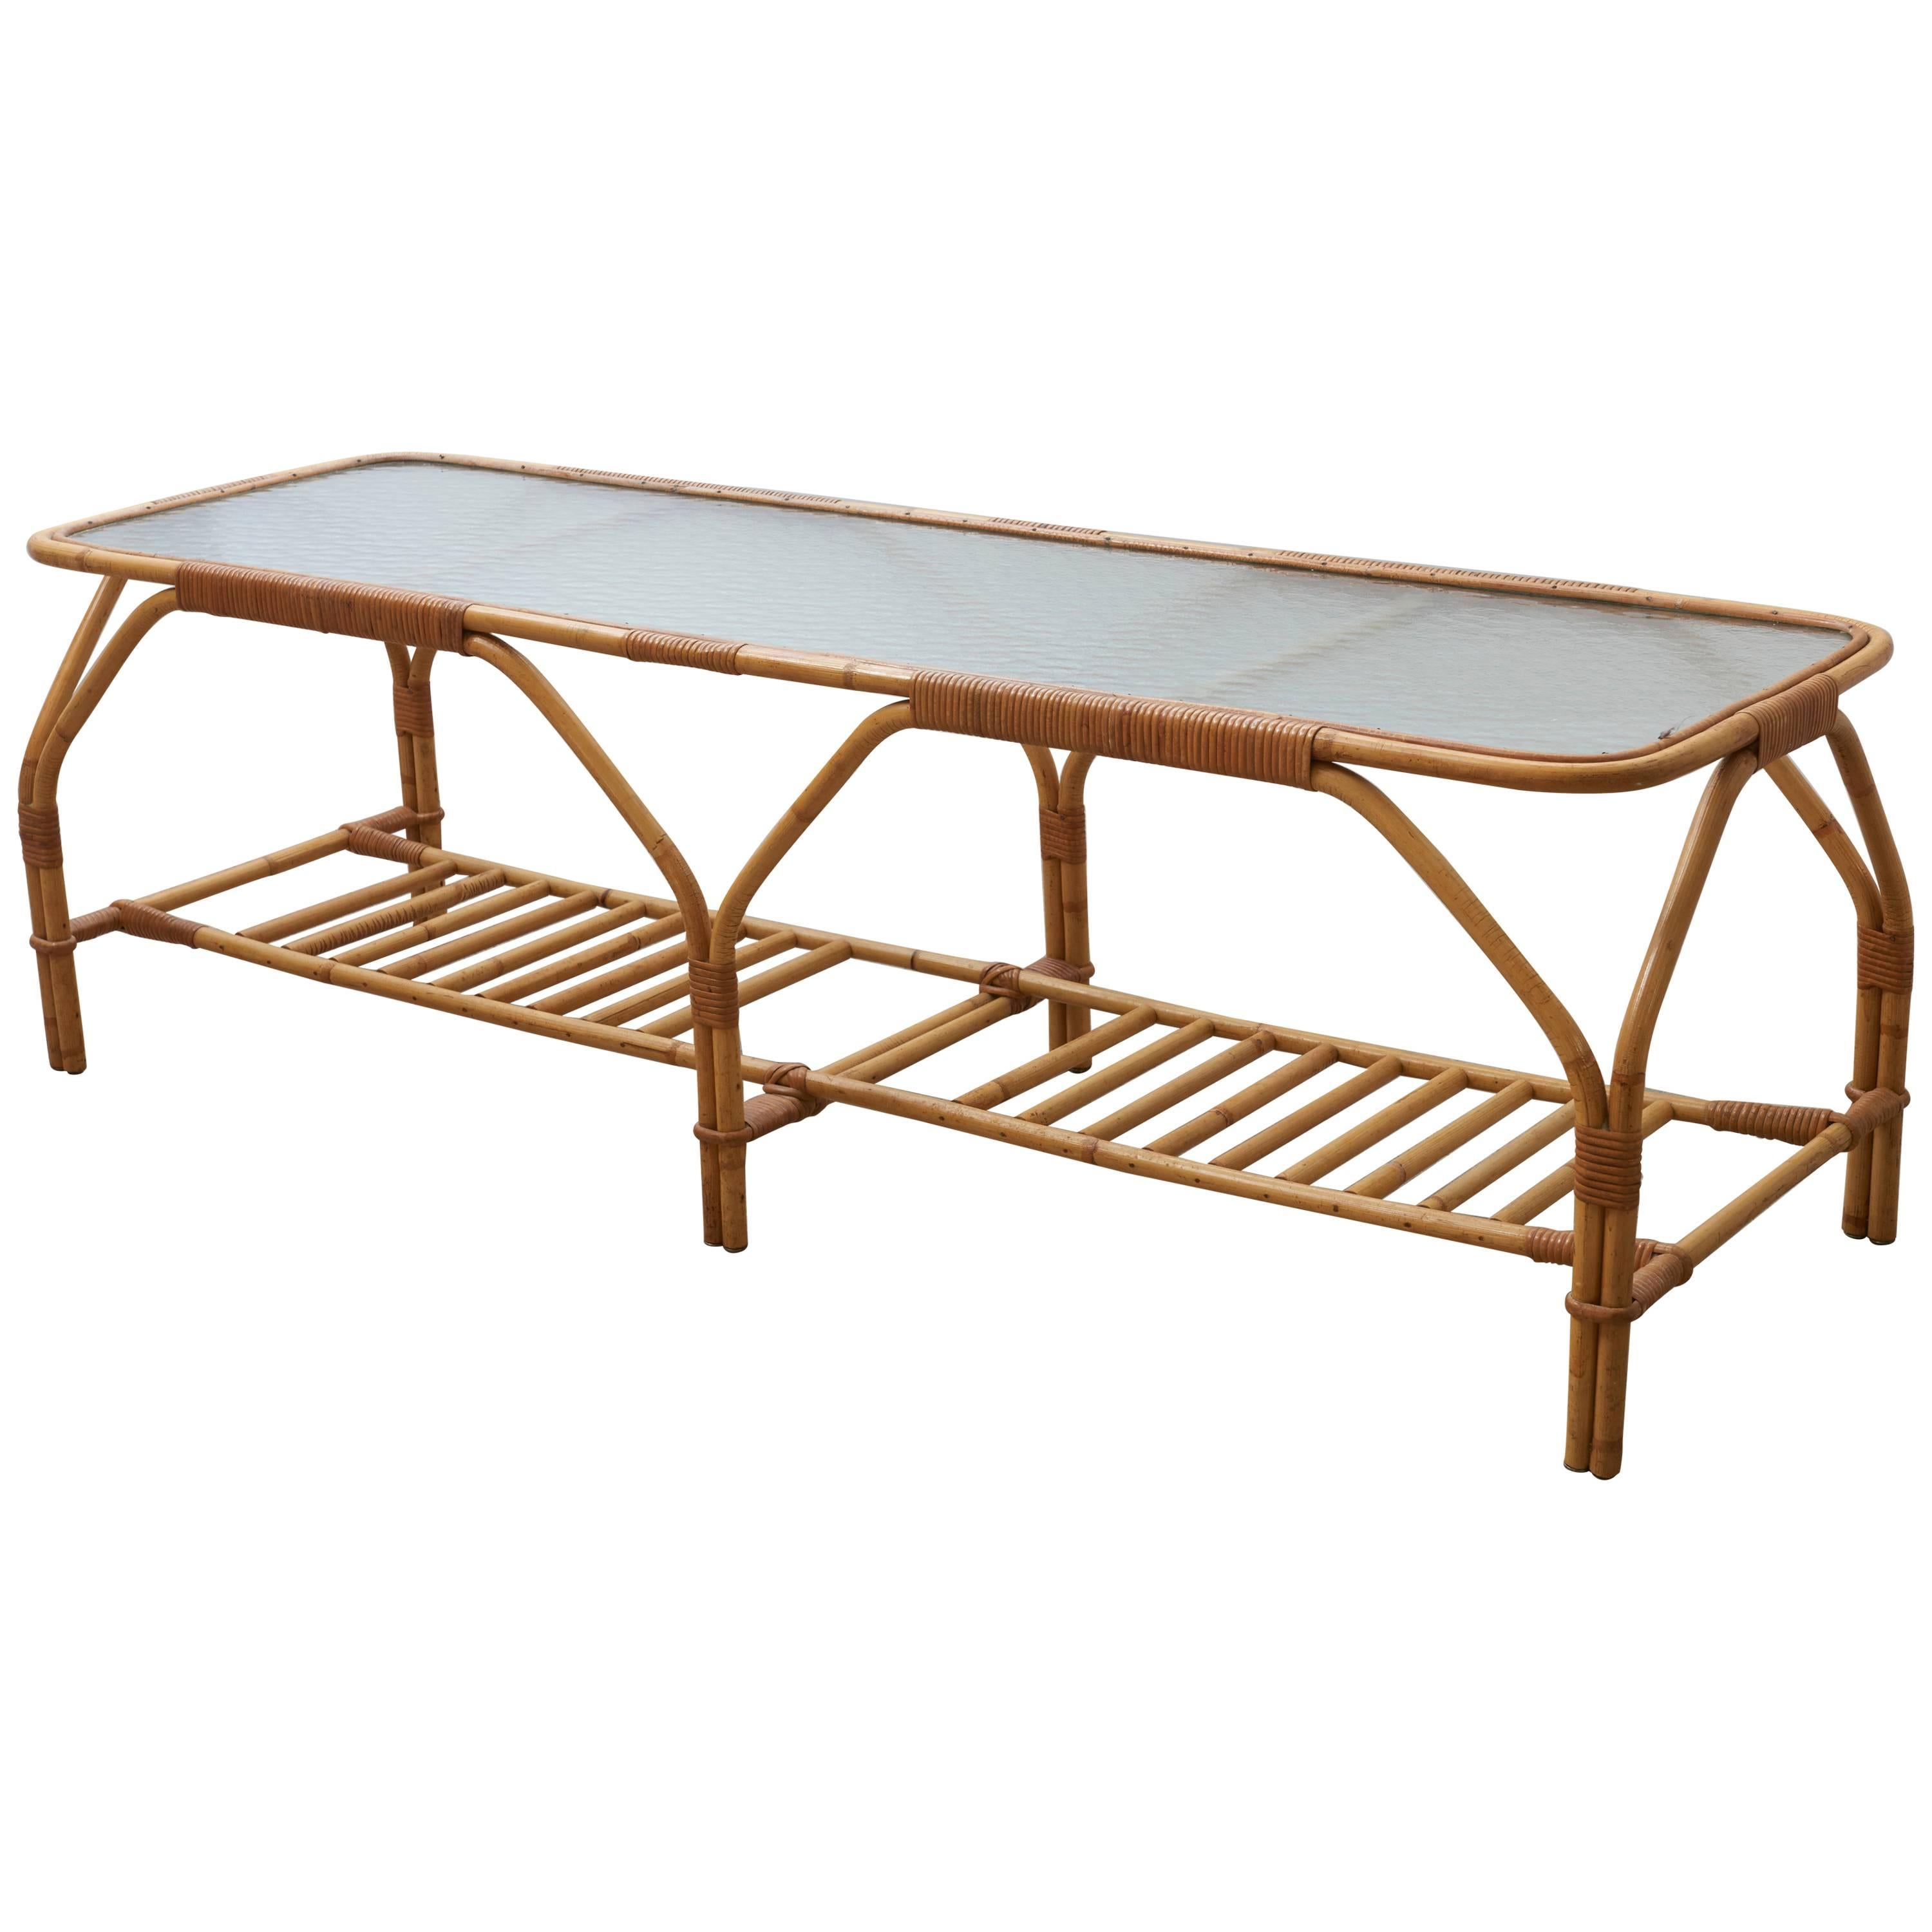 Table basse ou table d'appoint en bambou d'un style exceptionnel, attribuée par Viggo Boesen à E.V.A. Nissen & Co, années 1950. L'aspect naturel du bambou et du rotin donne à la table un effet décoratif organique dans votre intérieur.